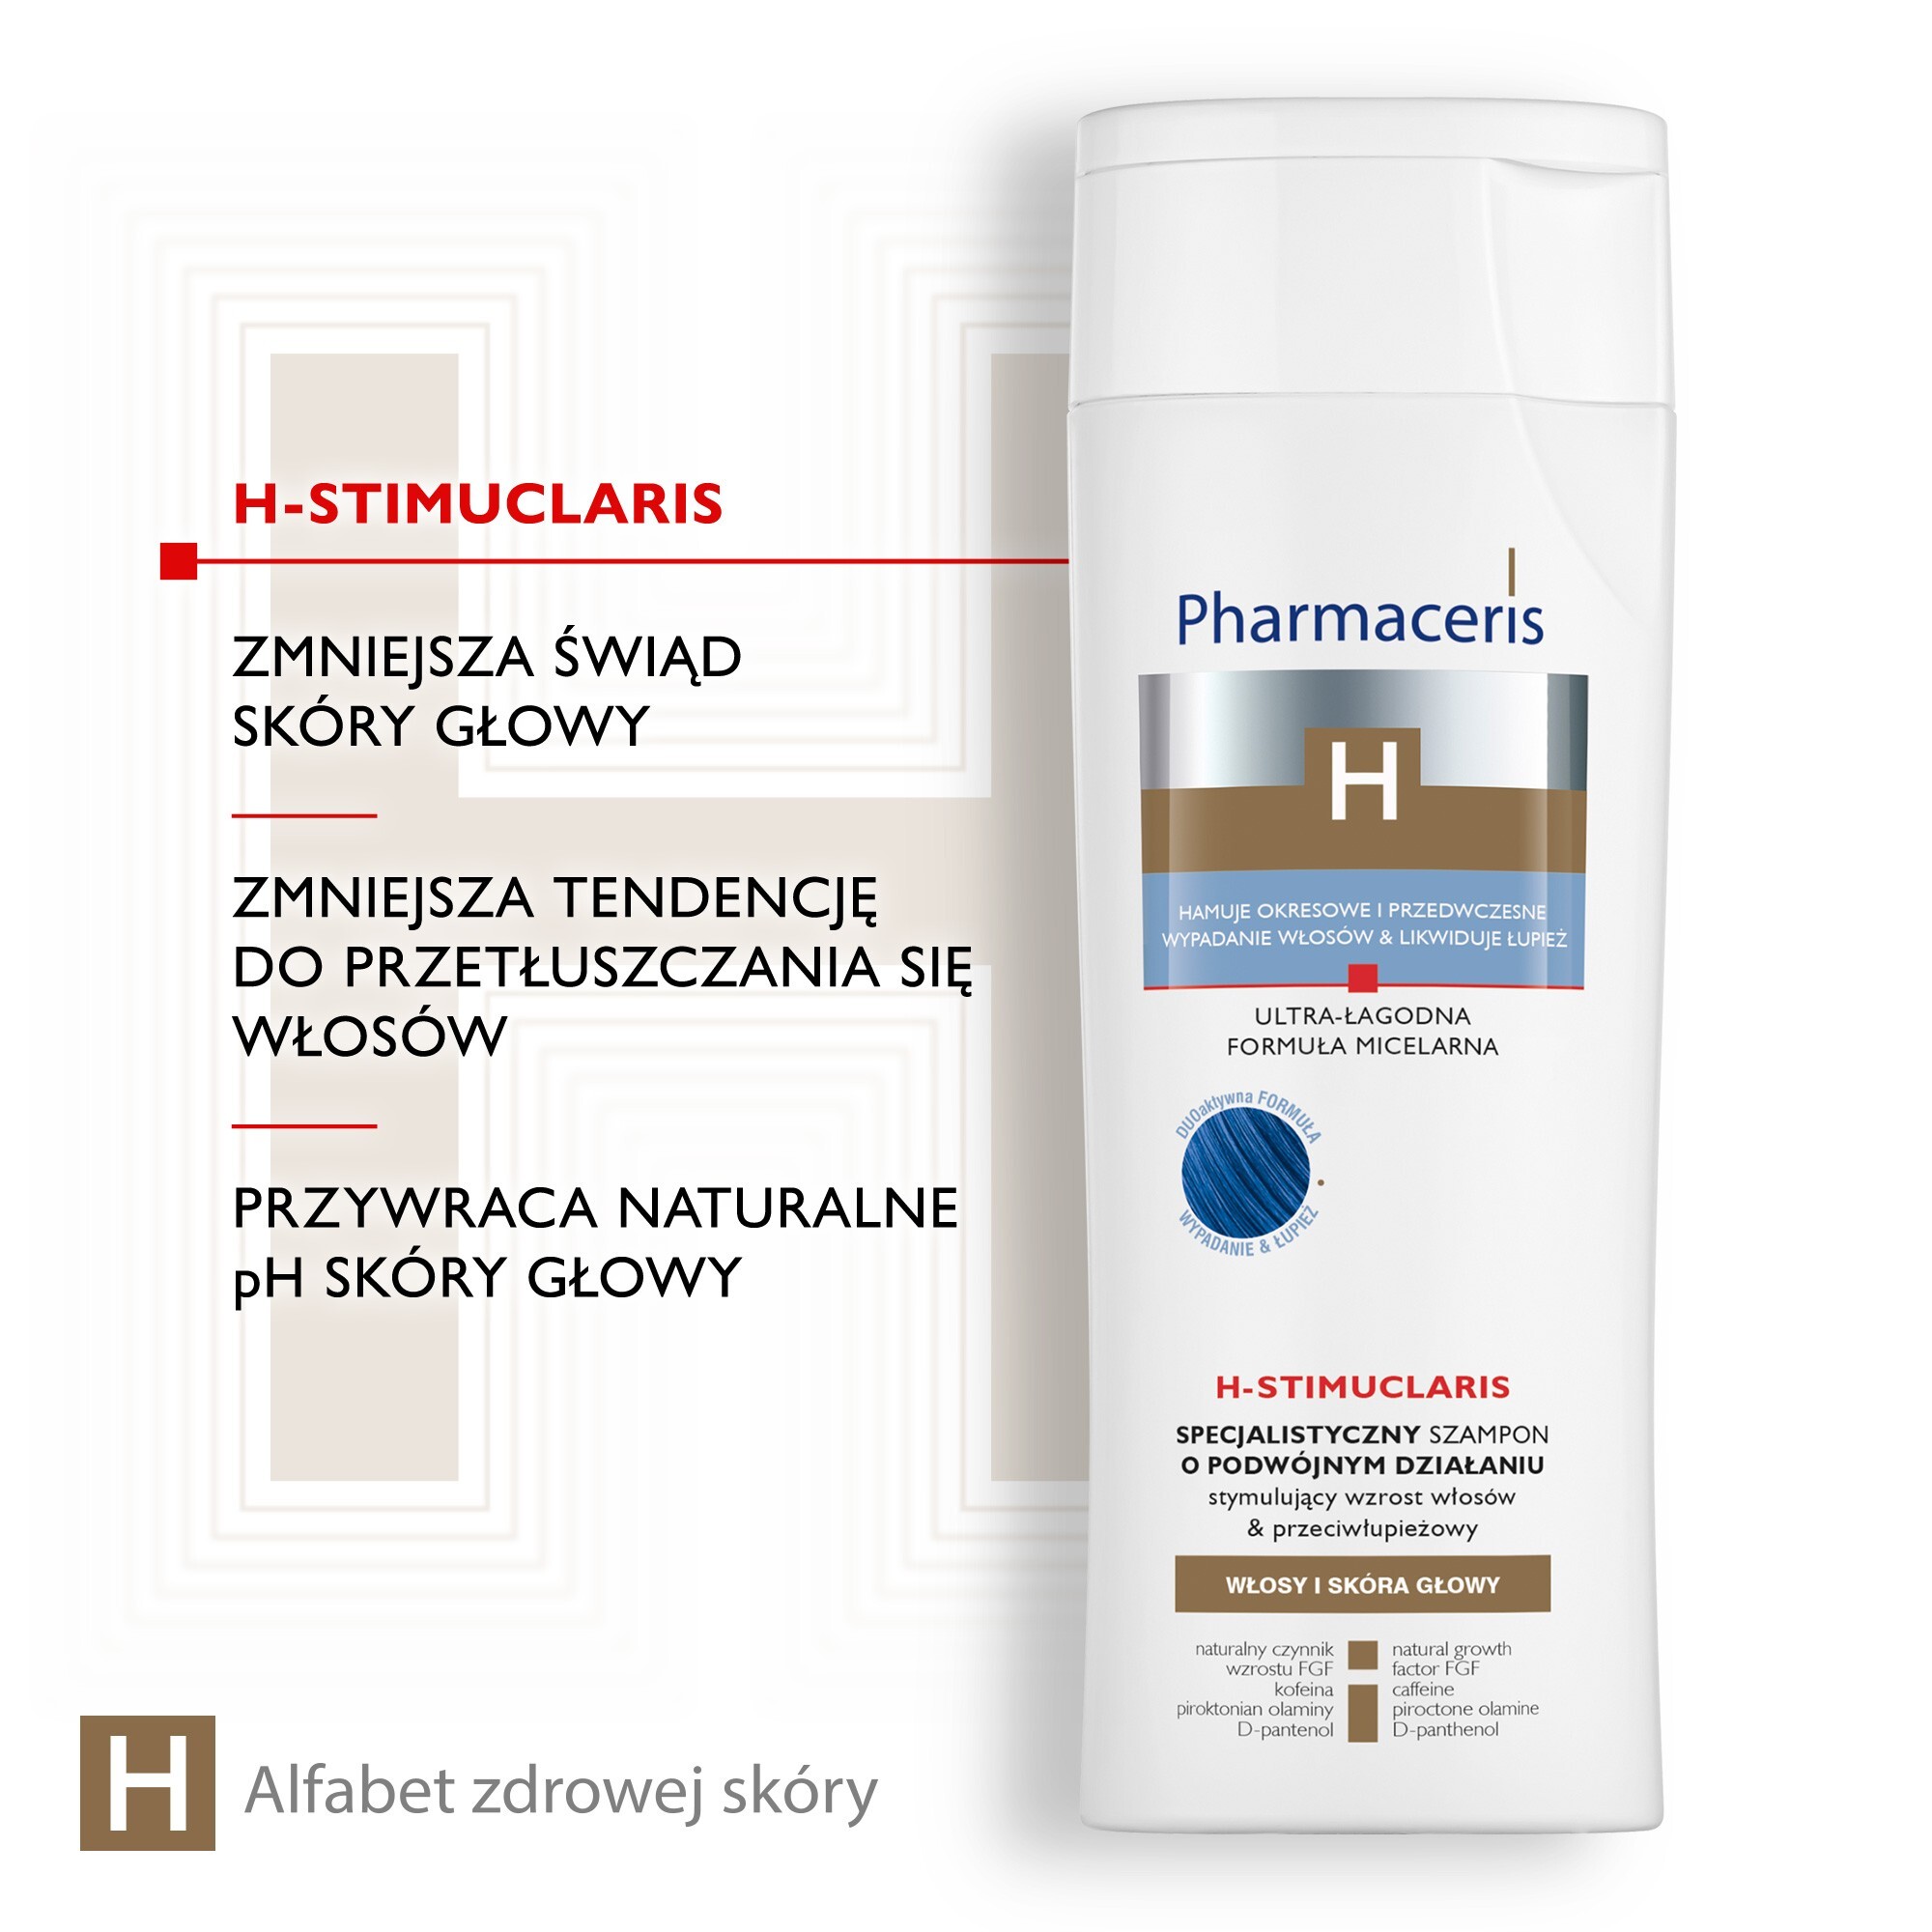 pharmaceris h stimupurin specjalistyczny szampon stymulujący wzrost włosów wizaz